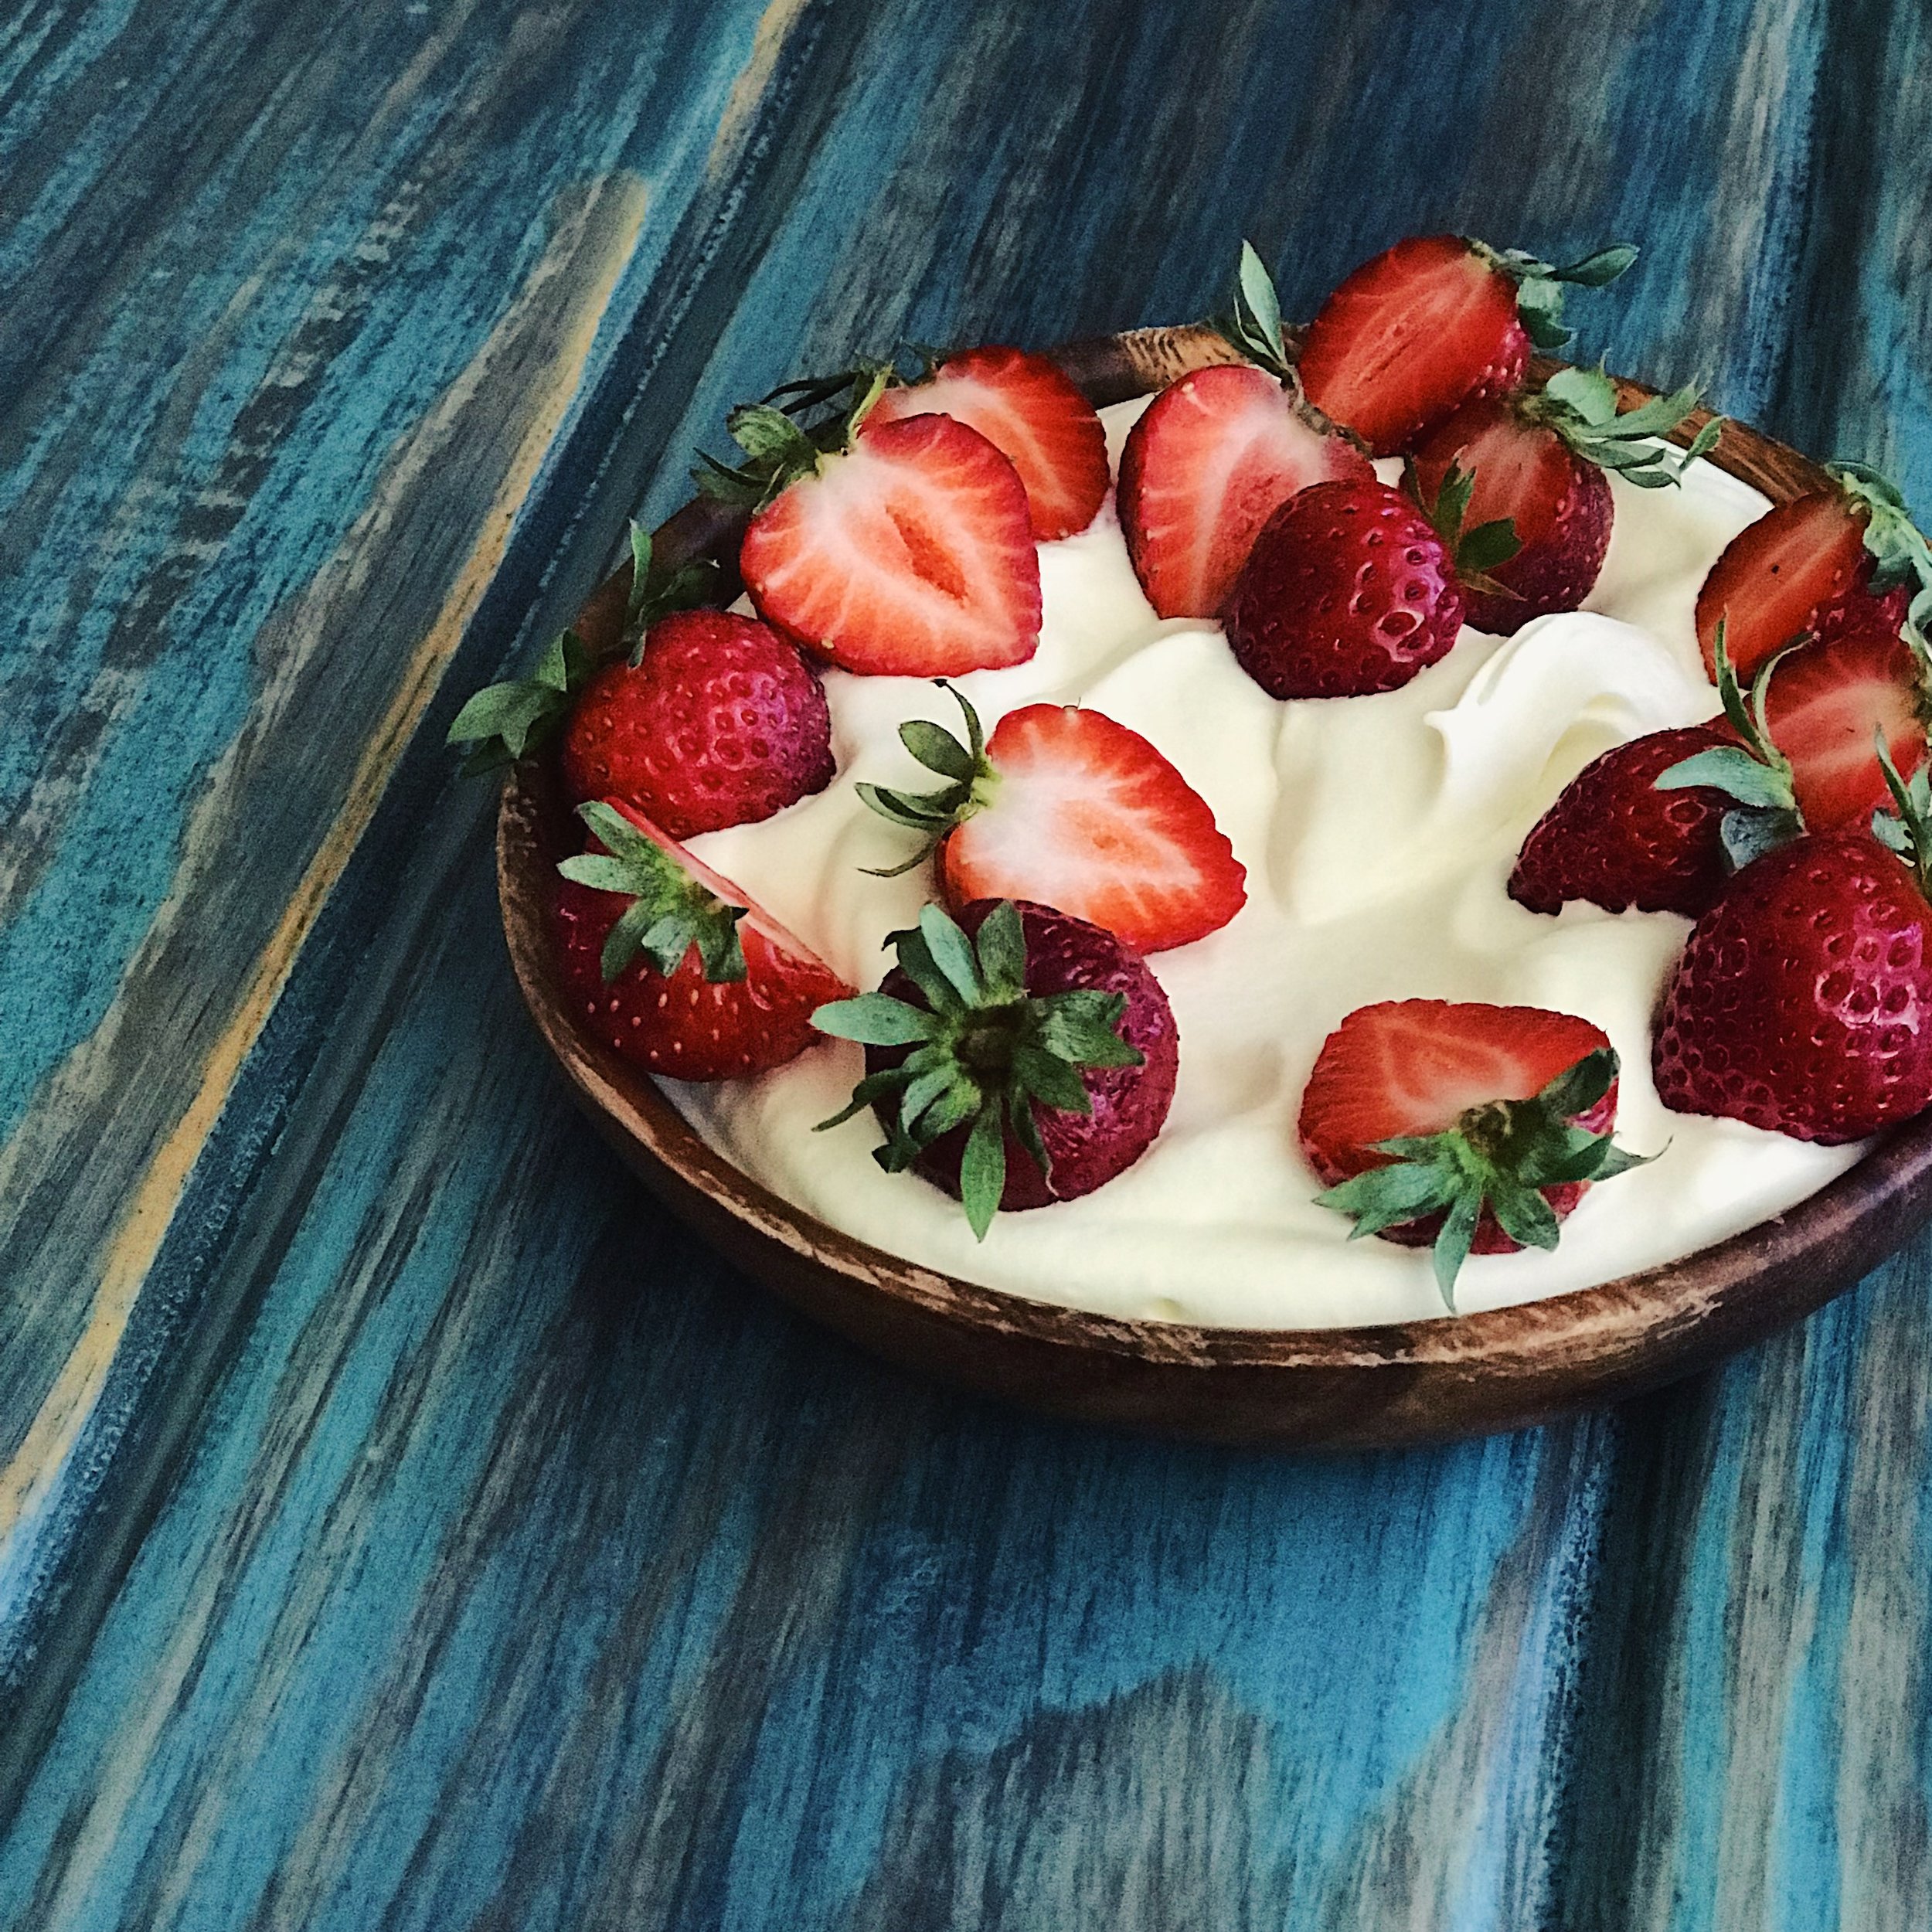 Magic Strawberries with Orange Blossom Cream | RafaellaSargi.com